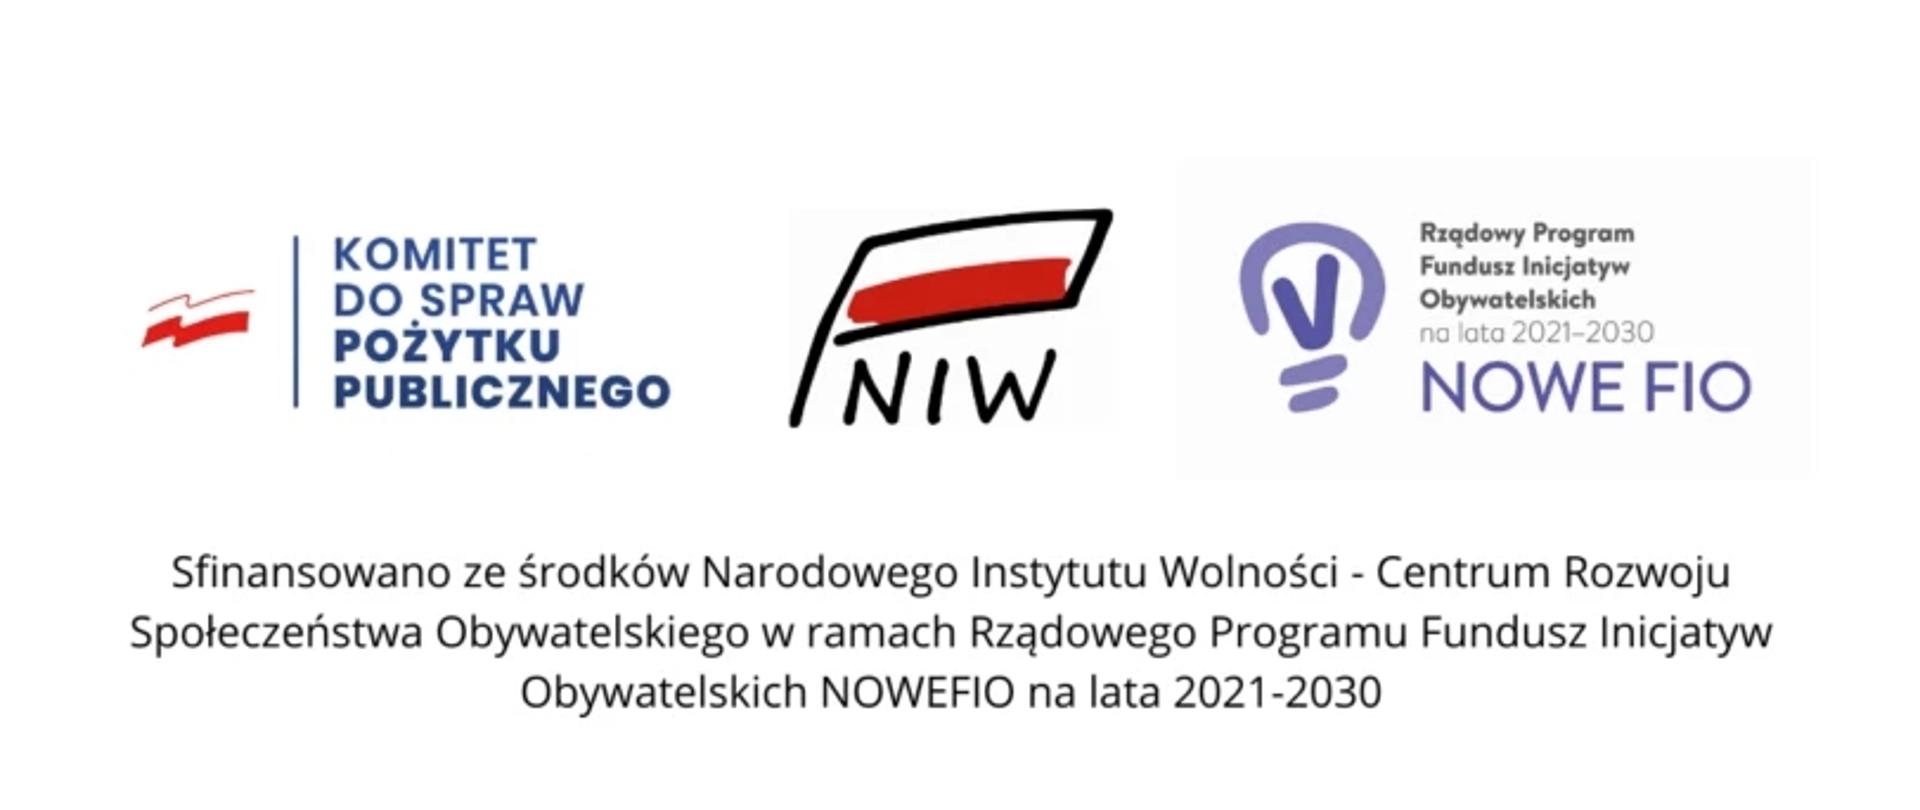 grafika przedstawia trzy logo organizacji. Na lewo znajduje się logo “KOMITET DO SPRAW POŻYTKU PUBLICZNEGO” z czerwonymi liniami i niebieskim tekstem. W środku jest logo “NIW” z stylizowaną flagą Polski. Po prawej stronie widnieje logo “Rządowy Program Fundusz Inicjatyw Obywatelskich NOWE FIO na lata 2021–2030” w kolorach fioletowo-niebieskich z elementami okrągłymi. Poniżej logotypów znajduje się zdanie informujące o sfinansowaniu ze środków Narodowego Instytutu Wolności - Centrum Rozwoju Społeczeństwa Obywatelskiego w ramach Rządowego Programu Fundusz Inicjatyw Obywatelskich NOWEFIO na lata 2021–2030